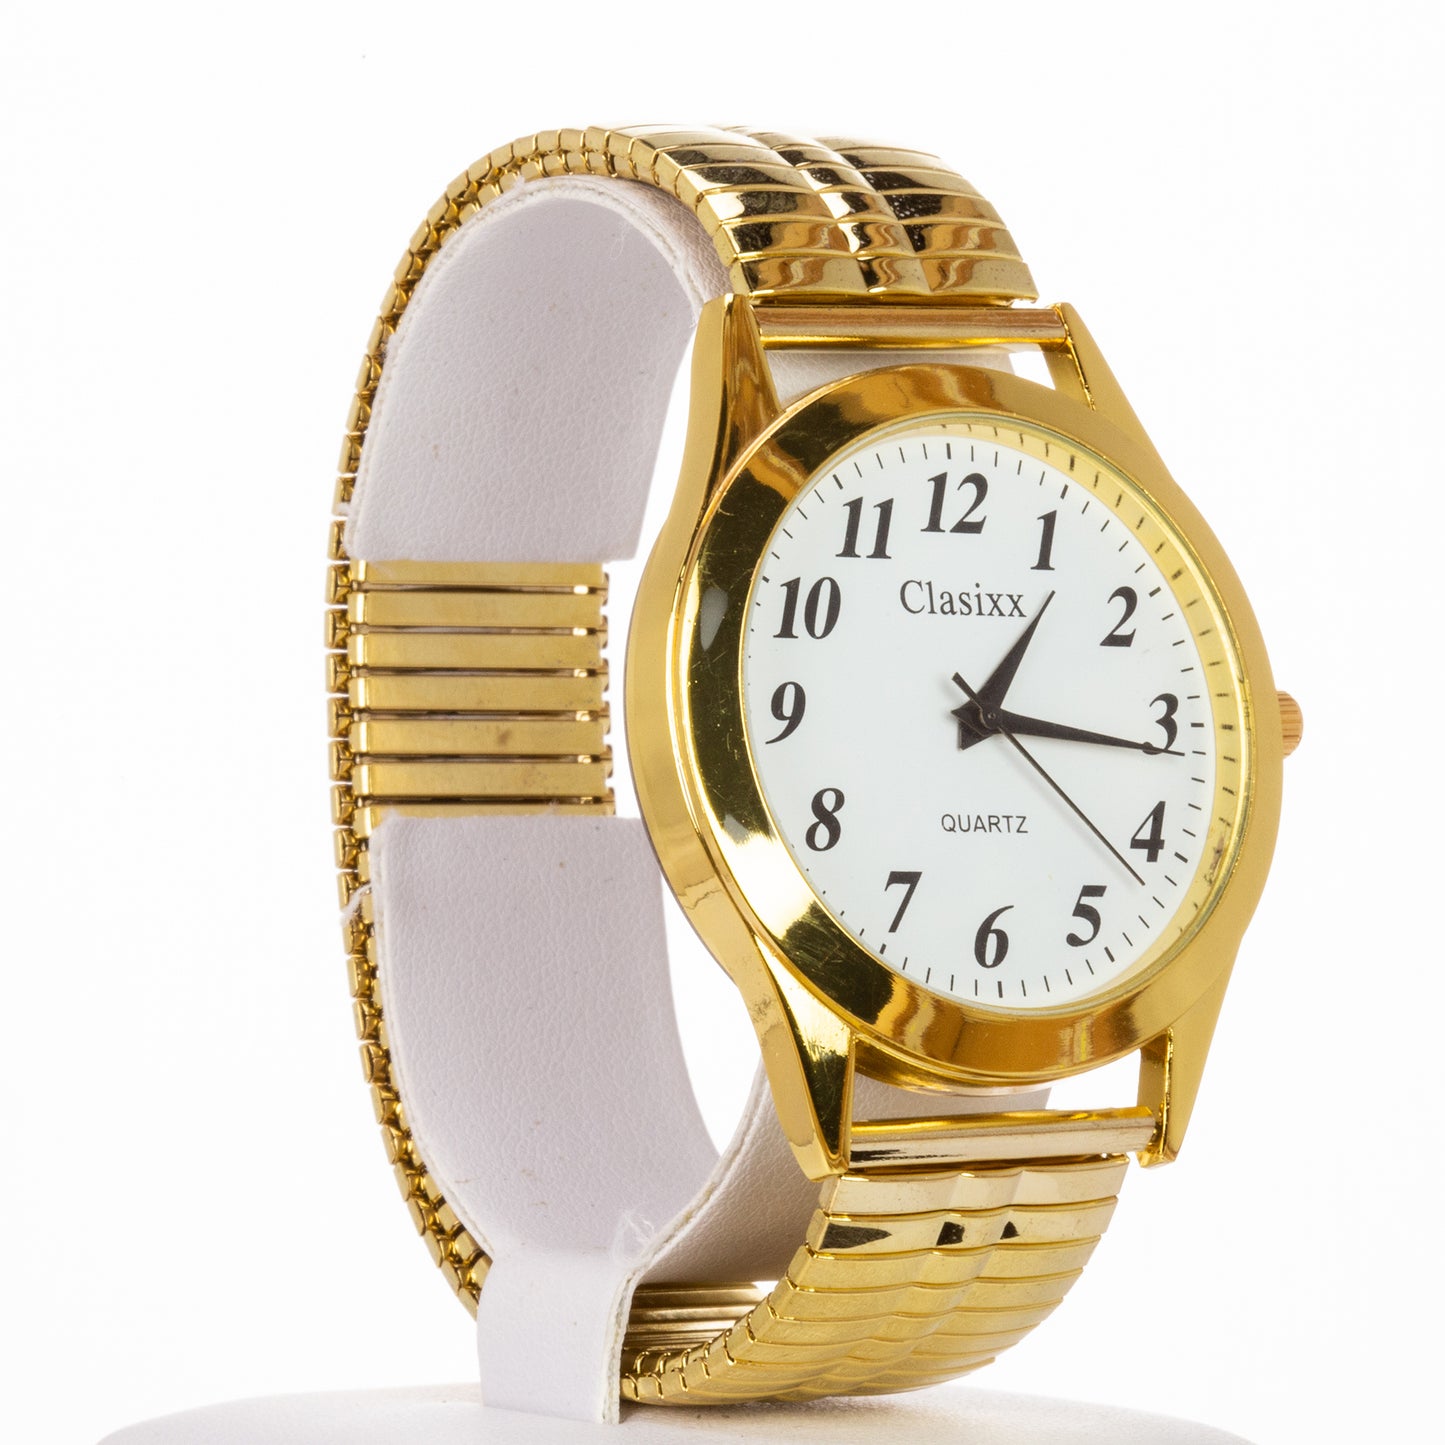 Classix pánské hodinky s řemínkem z nerezové oceli a vysoce kvalitním strojkem, ve zlaté barvě